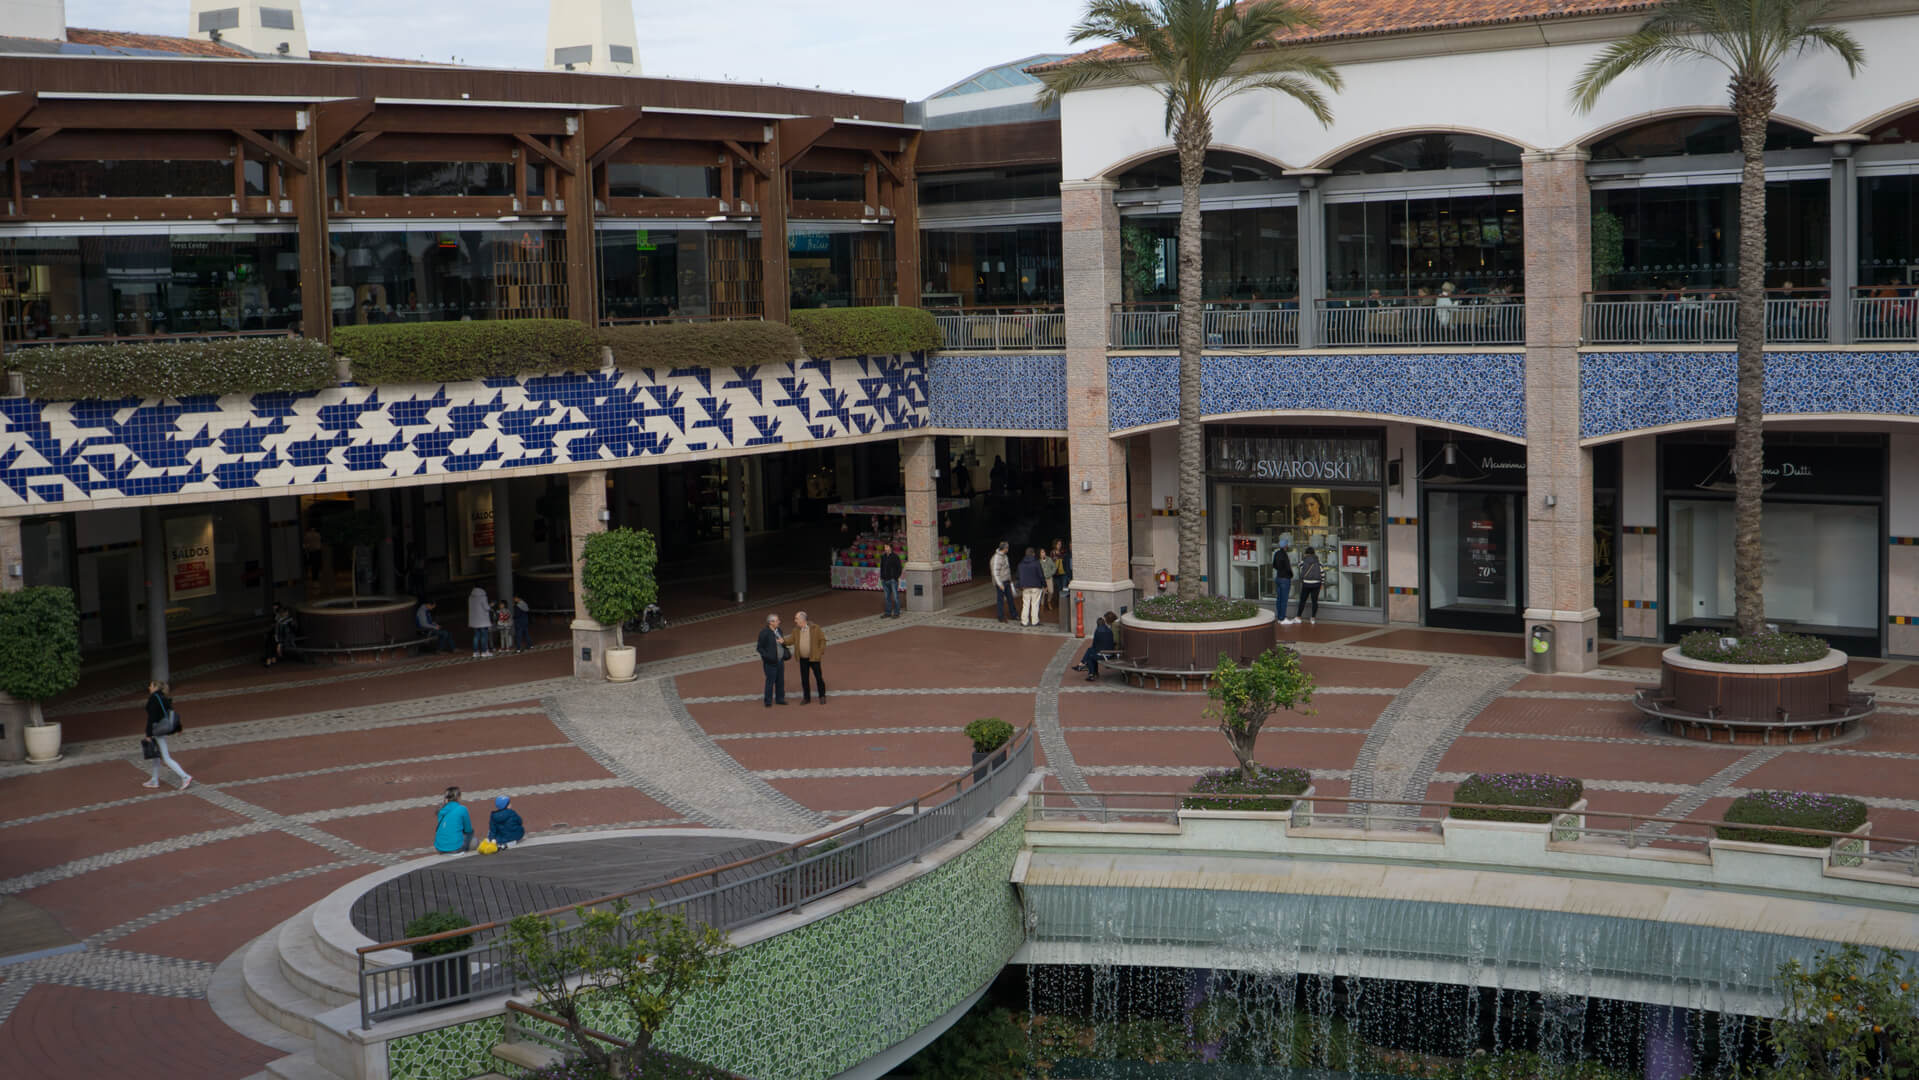 Quartiere commerciale Forum Algarve a Faro, regione dell'Algarve, Portogallo. Si tratta di una zona pedonale per lo shopping a Faro con molti negozi e ristoranti